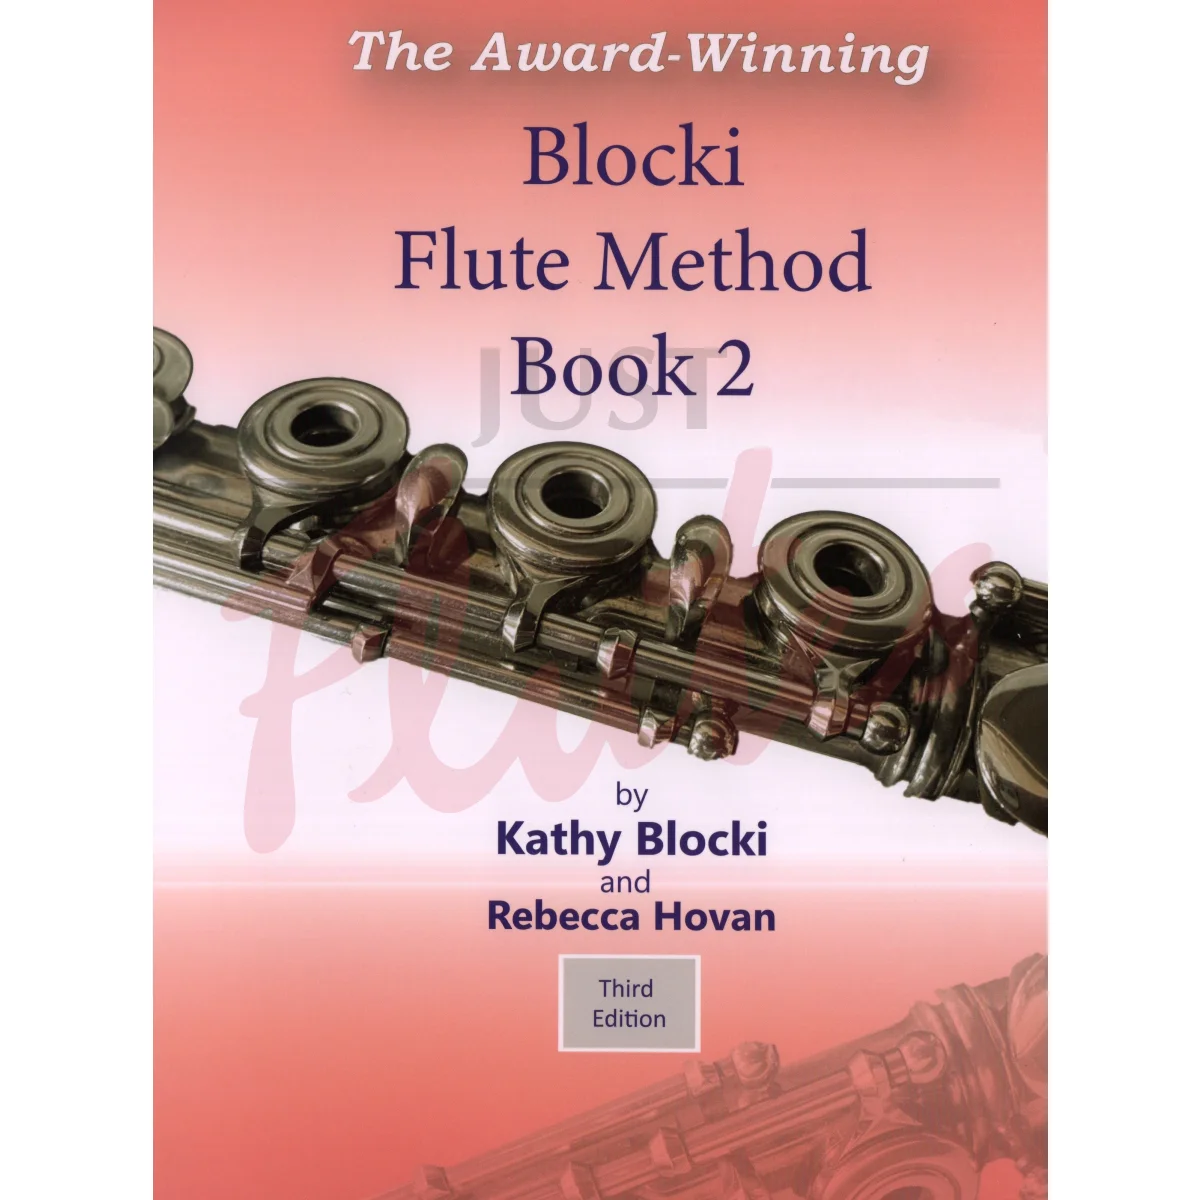 Flute Method Book 2